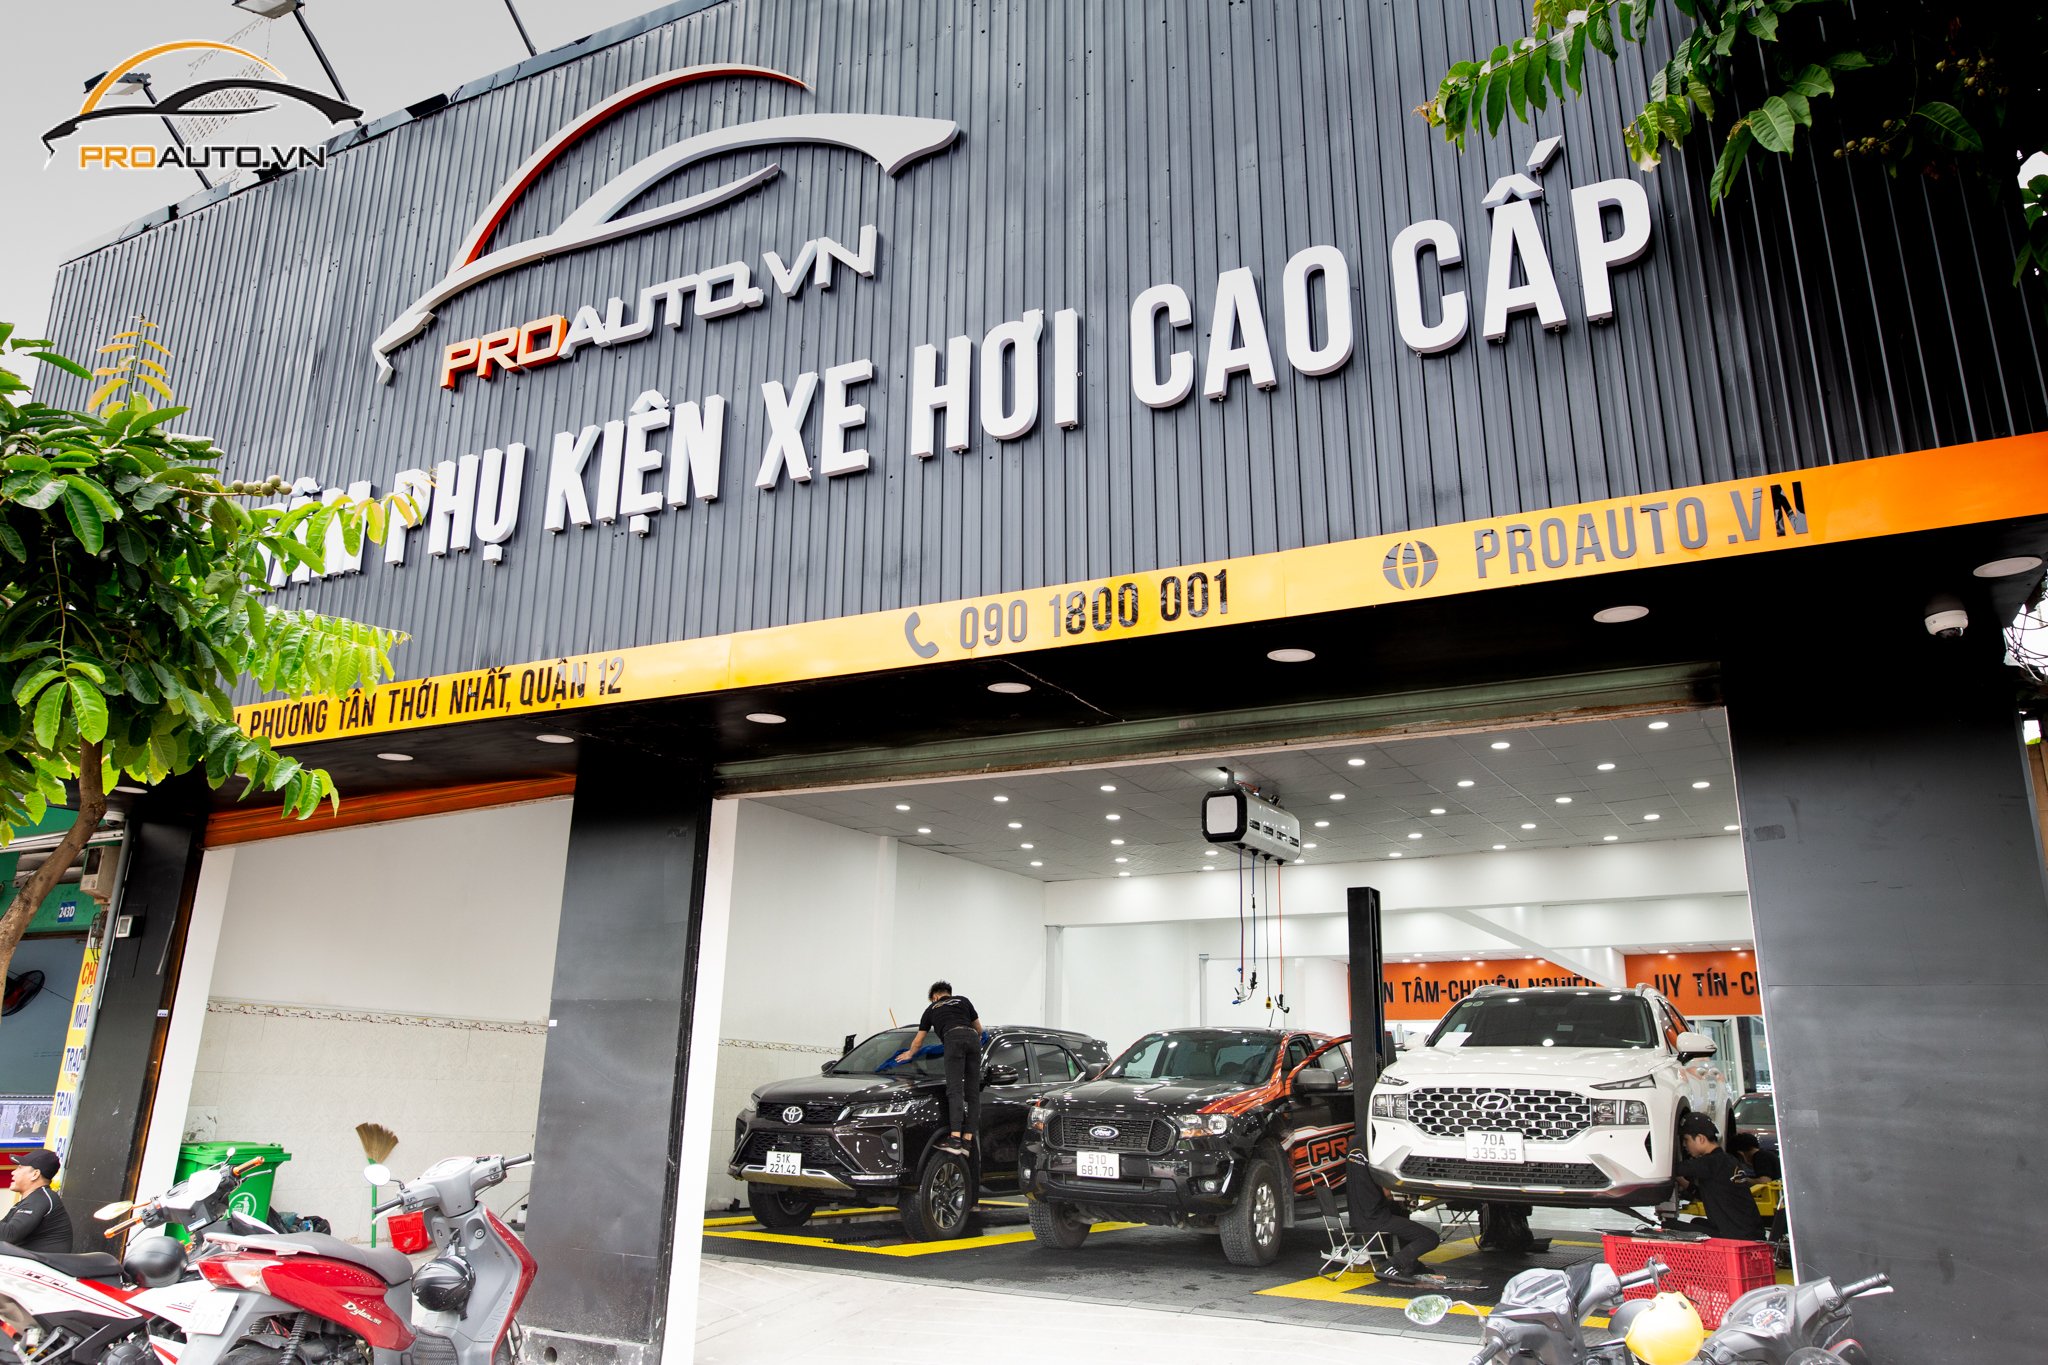 Proauto.vn - Trung tâm phụ kiện đồ chơi xe hơi uy tín tại TP. Long Xuyên